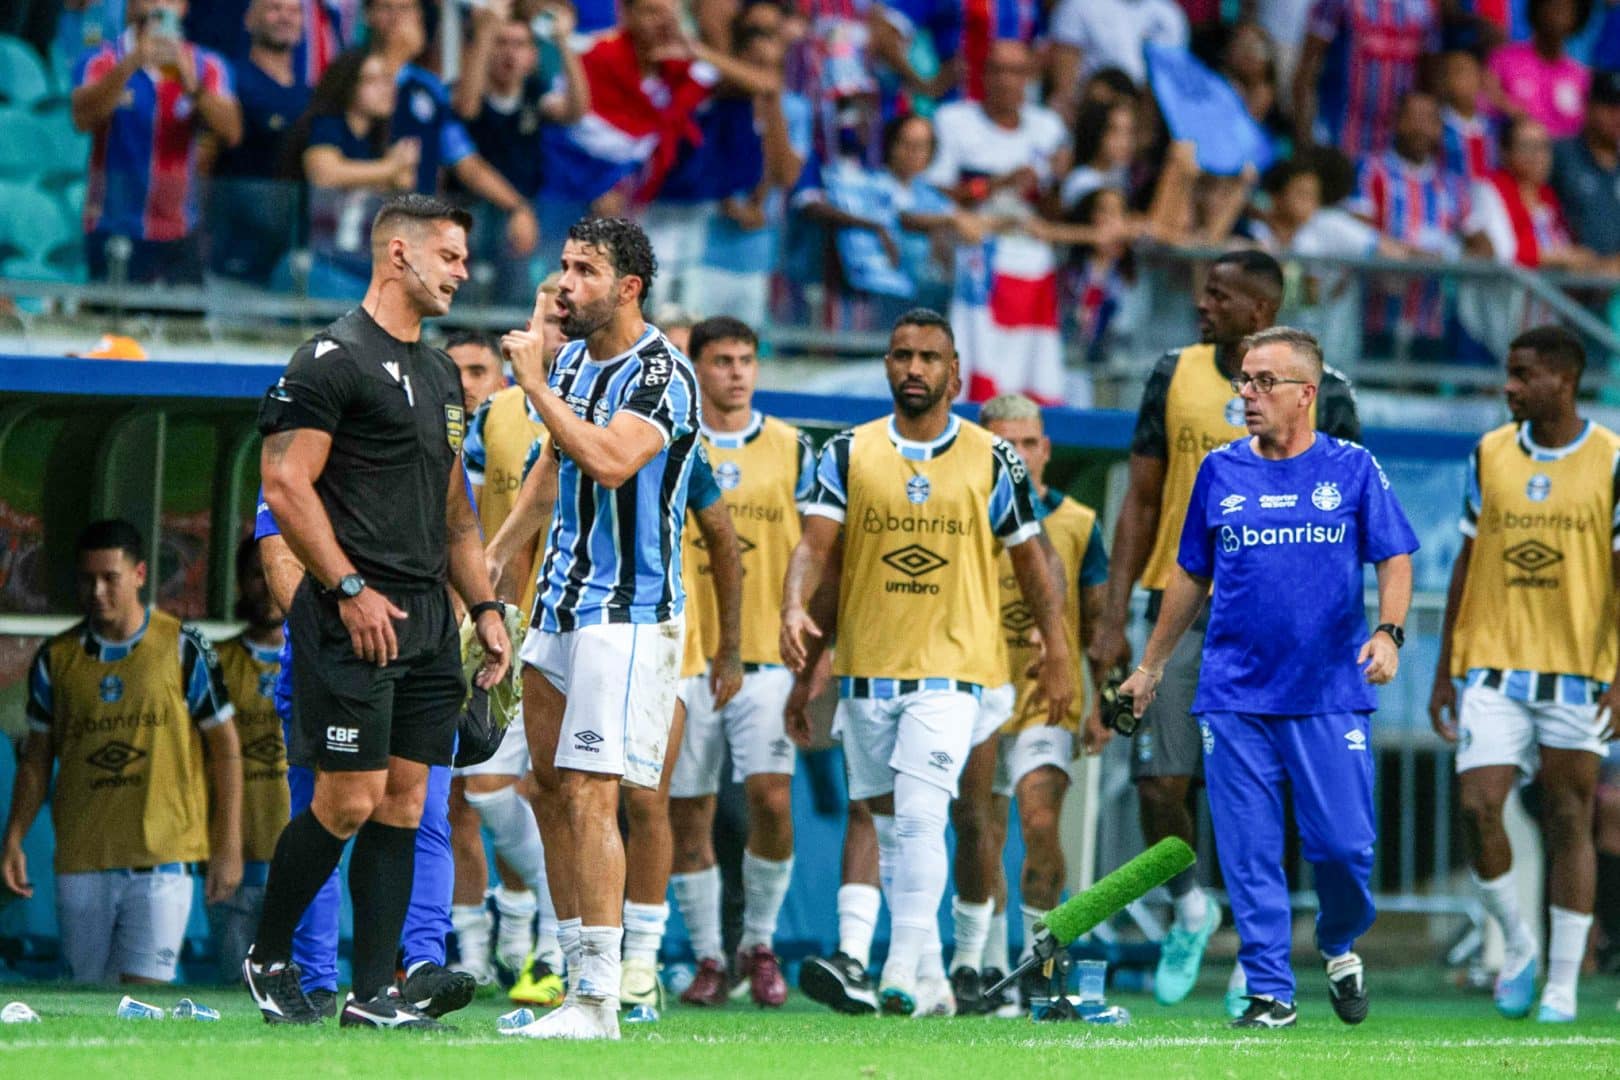 Depois interferência externa na Estádio Manancial Novidade, Grêmio e ANAF ingressam no STJD